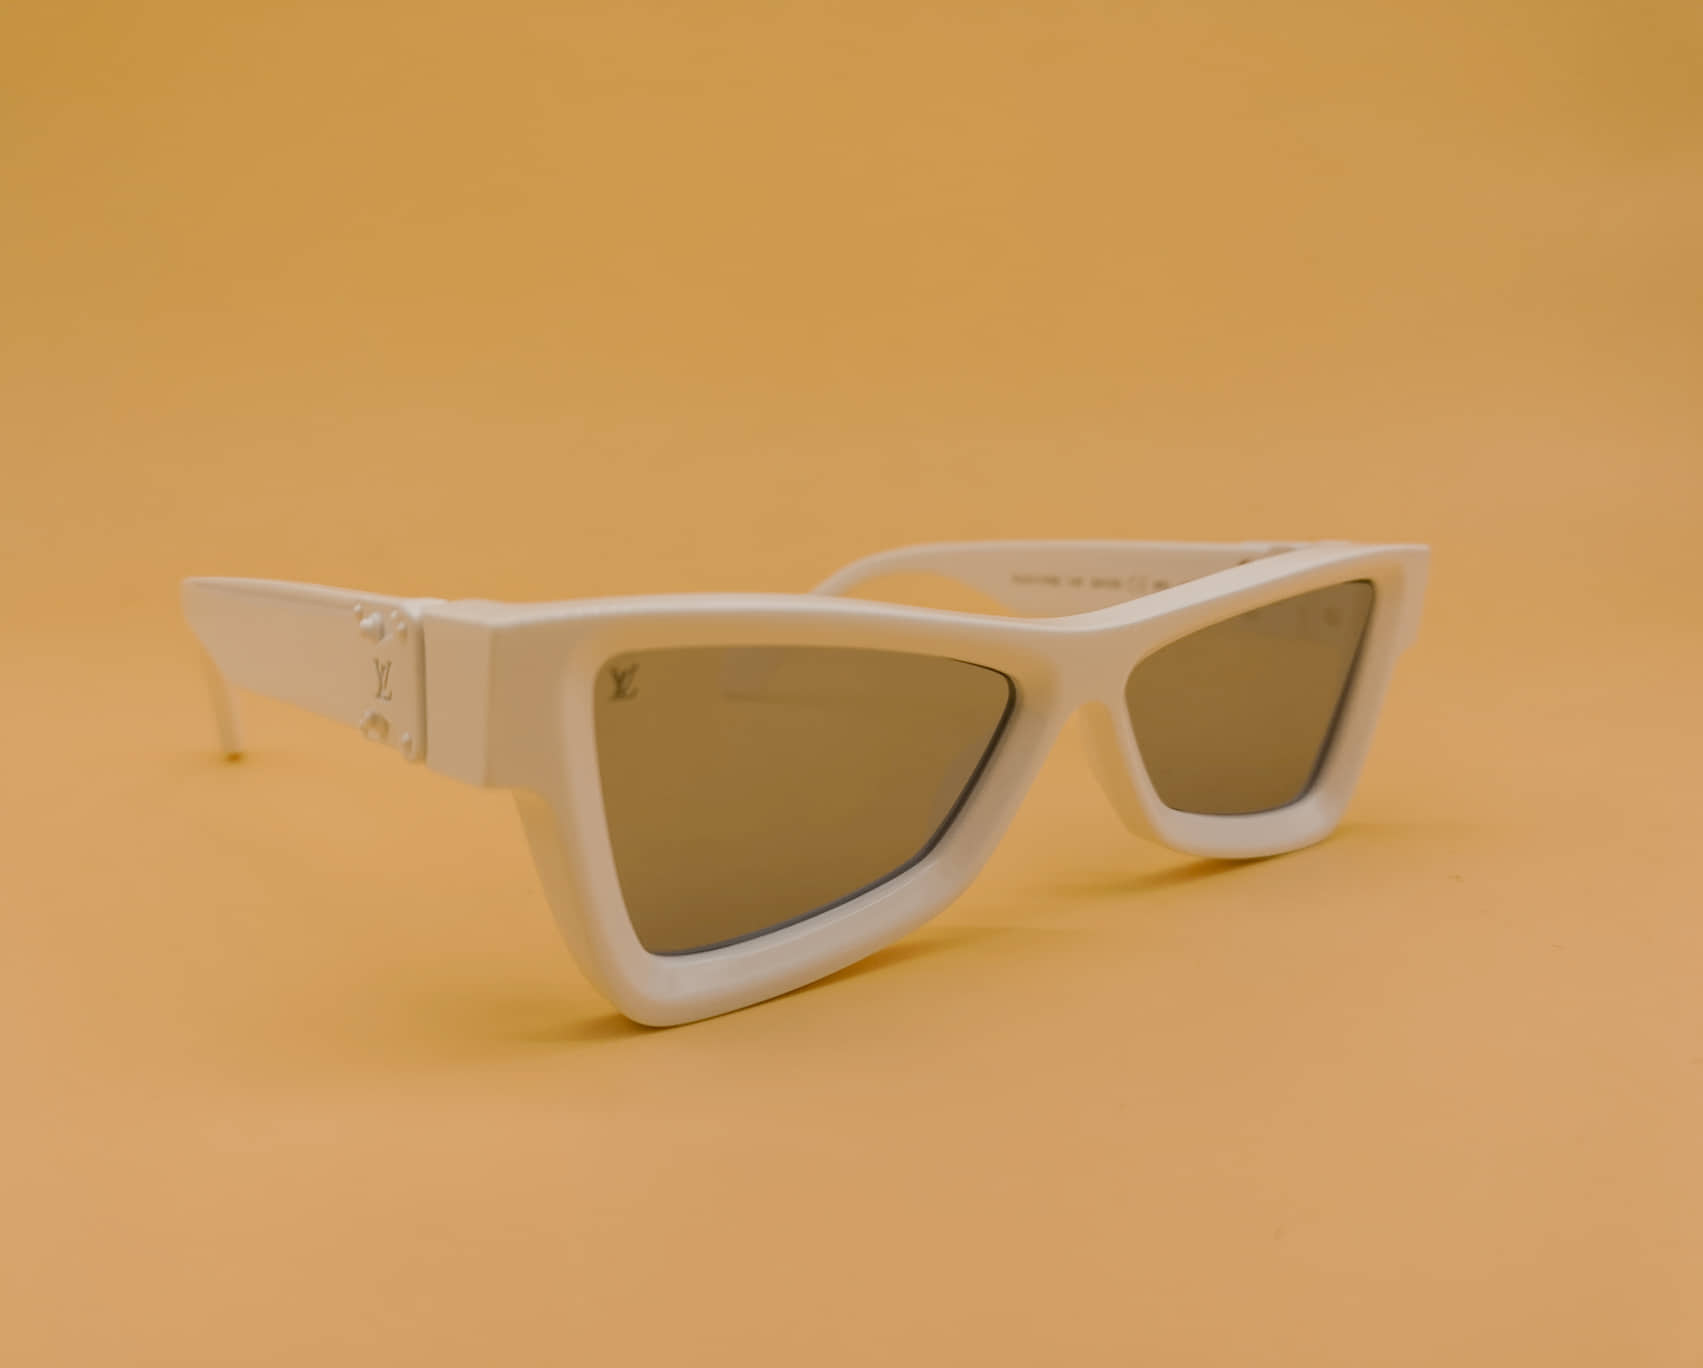 Louis Vuitton Sunglasses by Virgil Abloh Credit: @louisvuitton